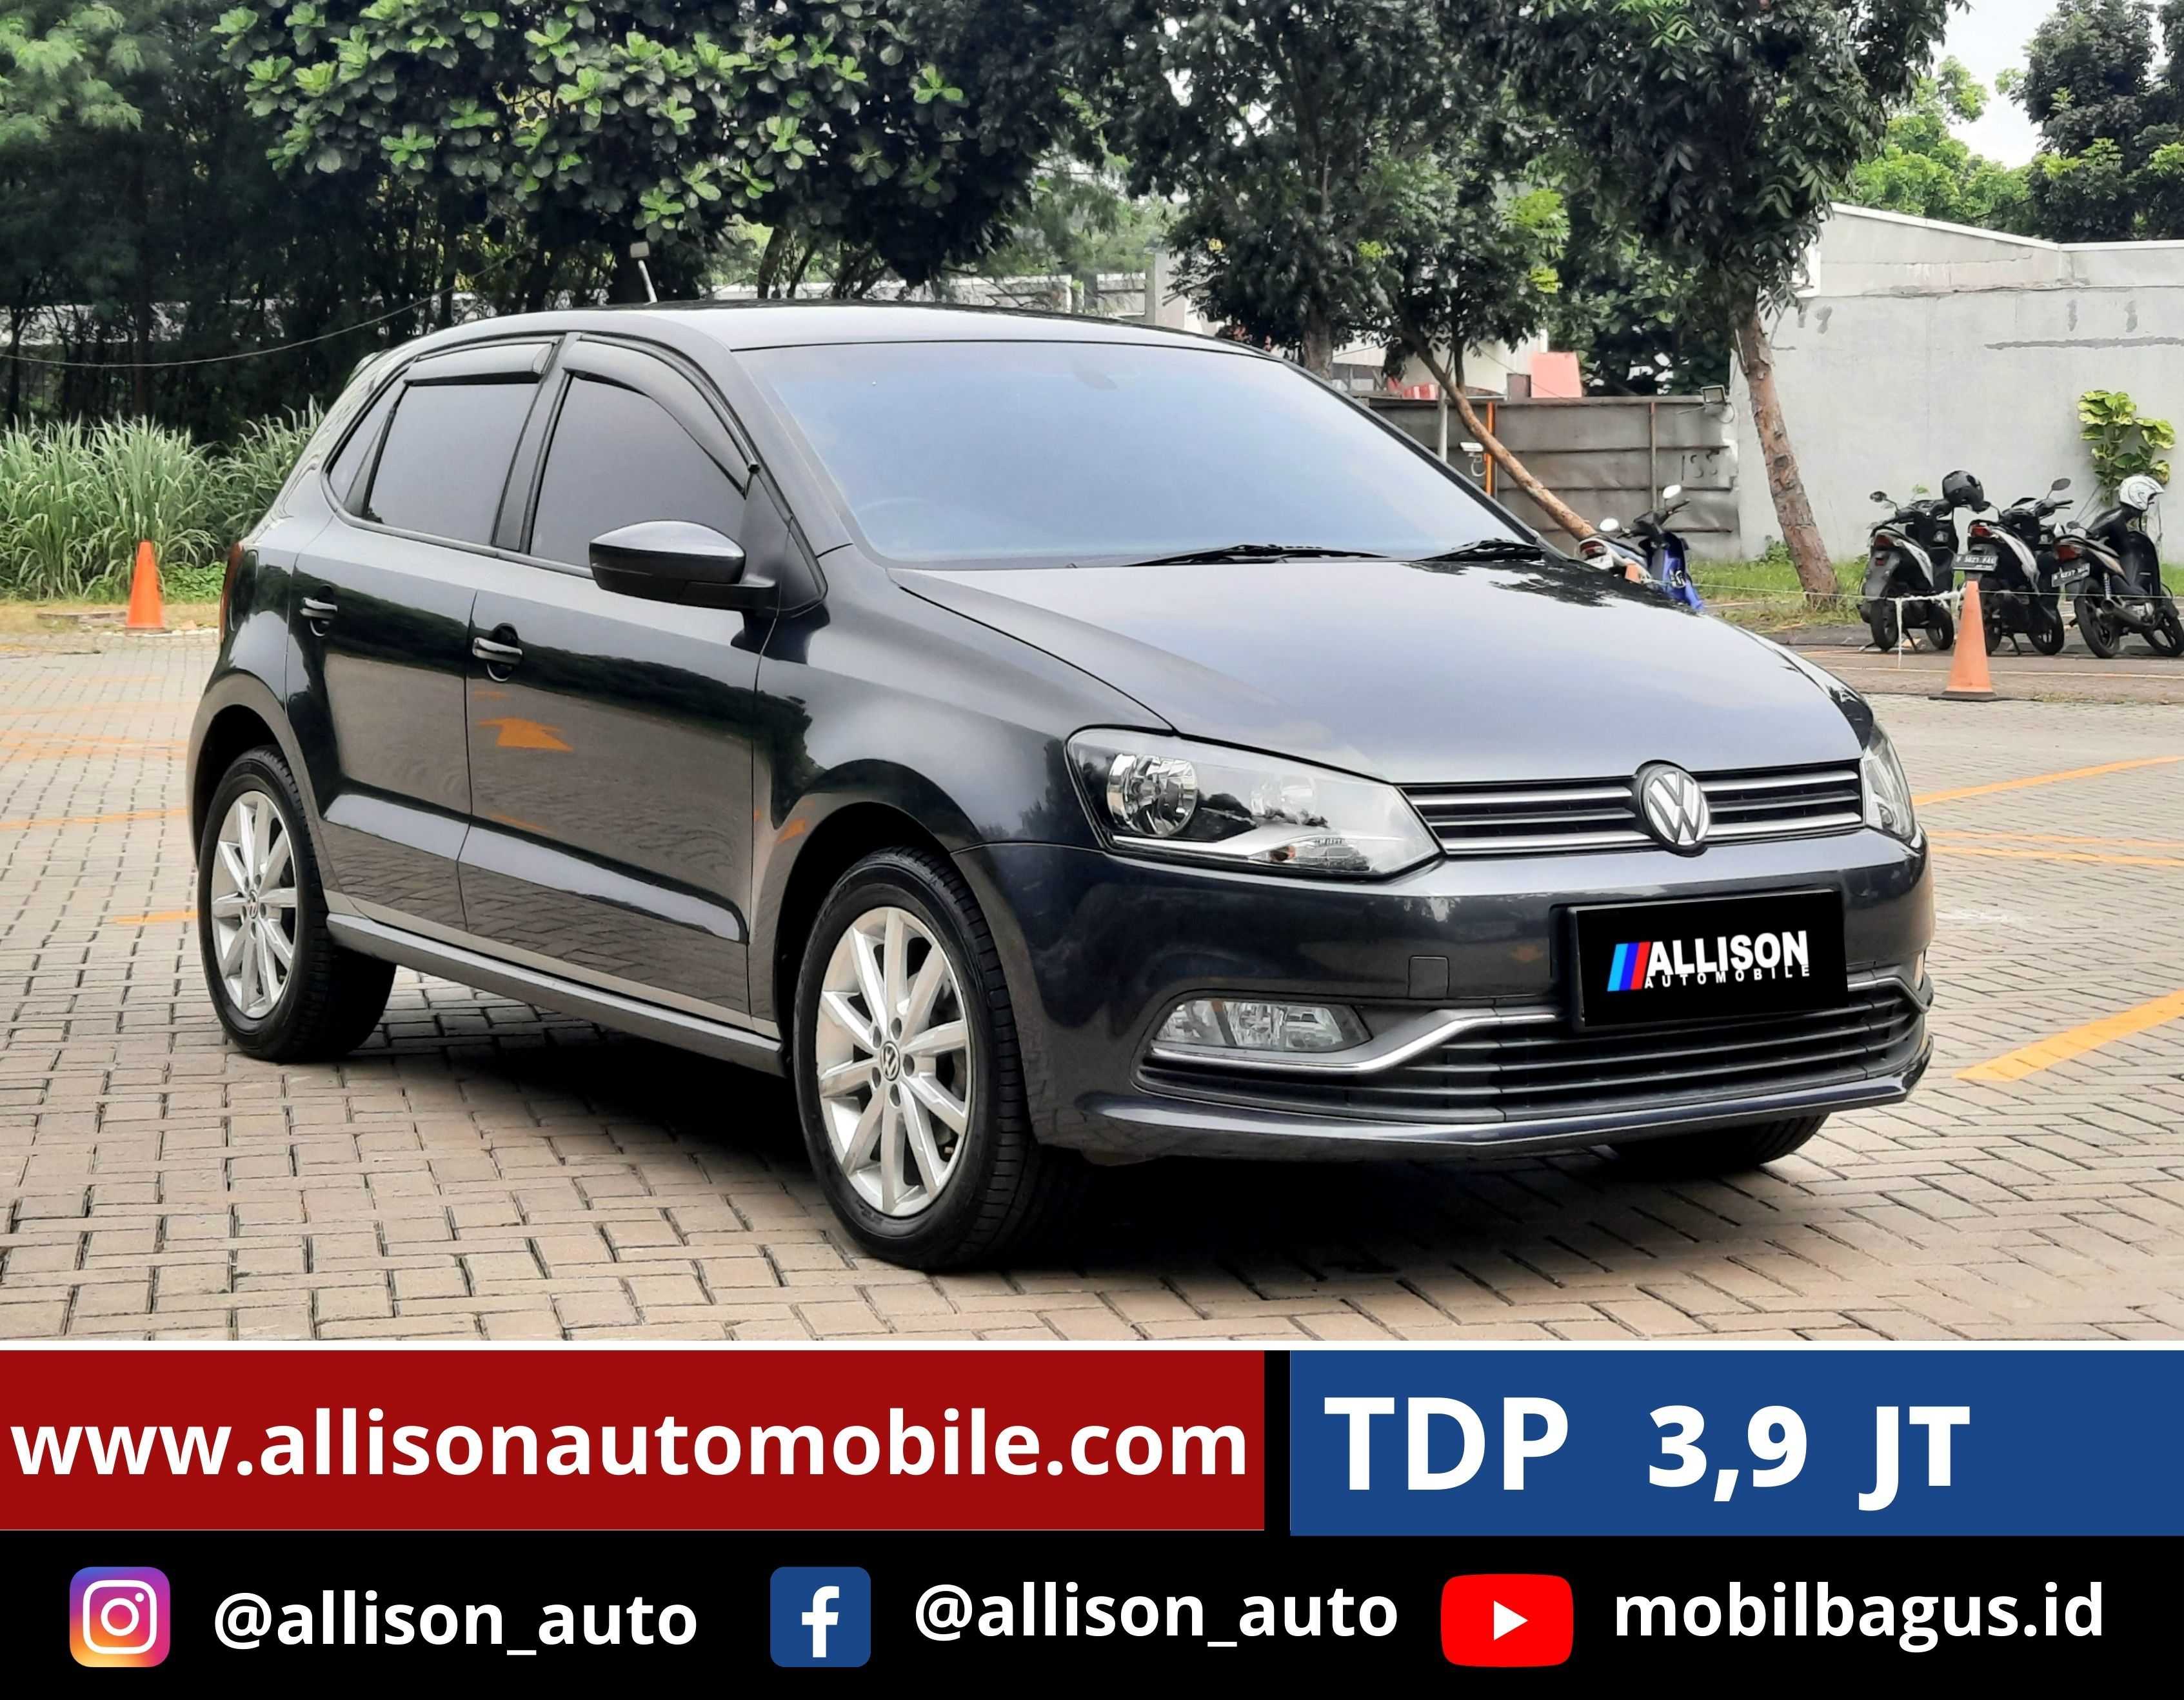 2019 Volkswagen Polo 1.2 GT TSI AT 1.2 GT TSI AT bekas